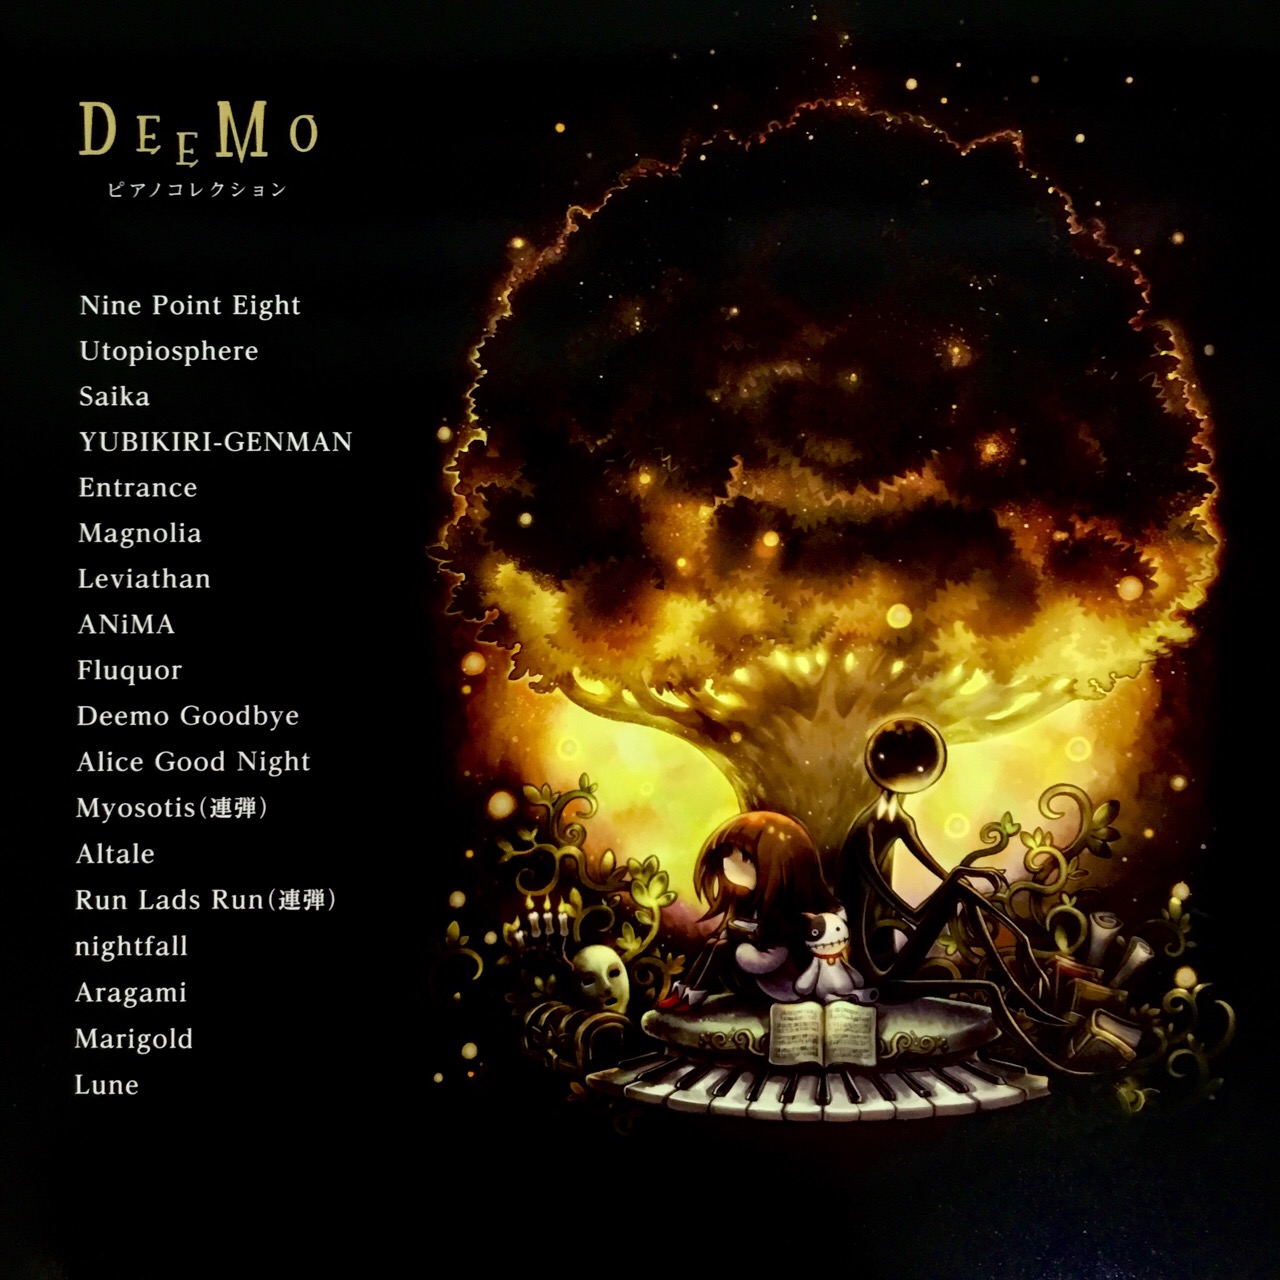 人気ゲーム Deemo のピアノ楽譜がついに登場 入荷しました 八王子店 店舗情報 島村楽器